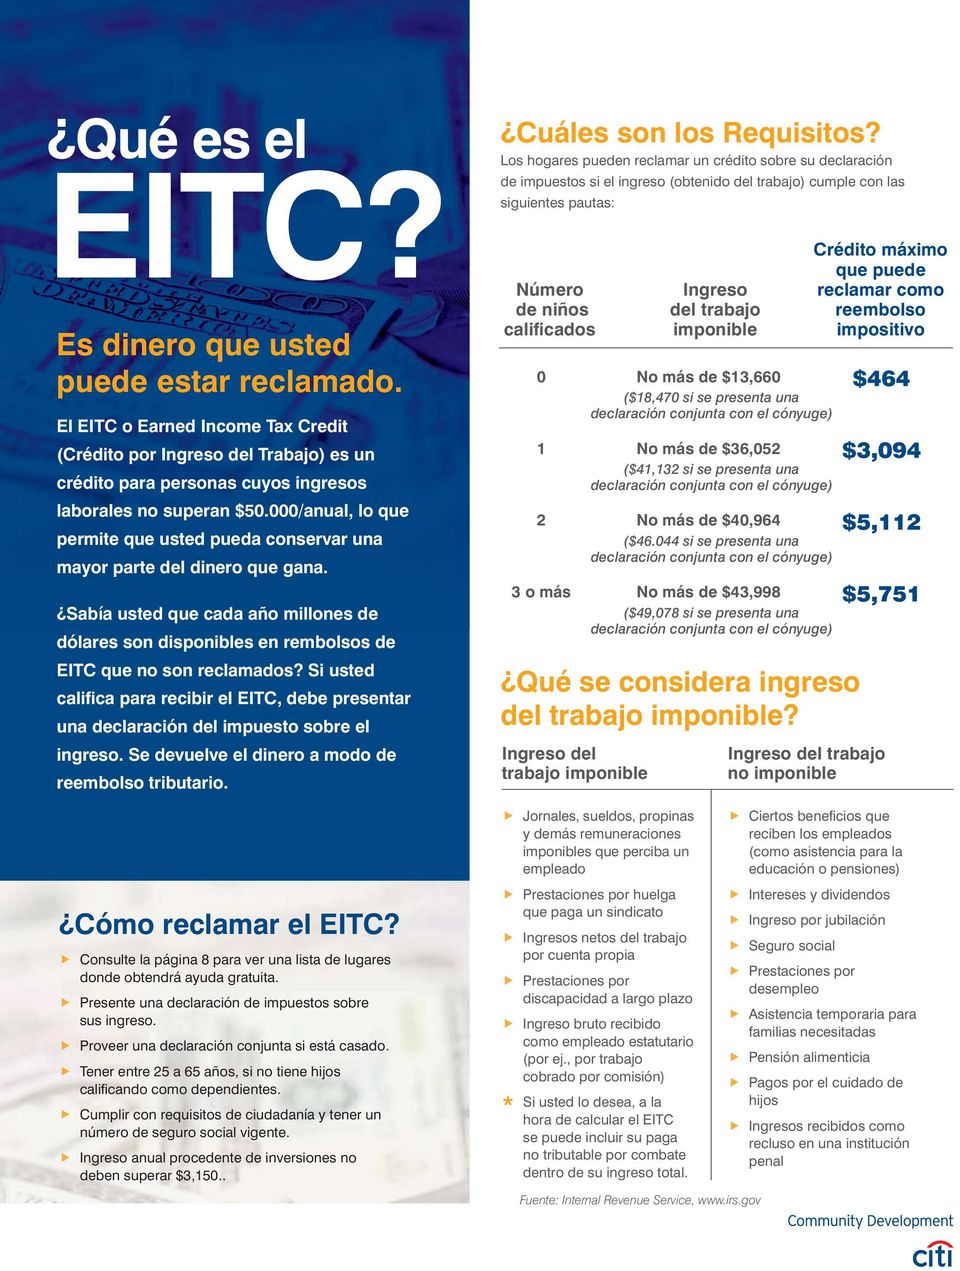 Si usted califica para recibir el EITC, debe presentar una declaración del impuesto sobre el ingreso. Se devuelve el dinero a modo de reembolso tributario. Cómo reclamar el EITC?